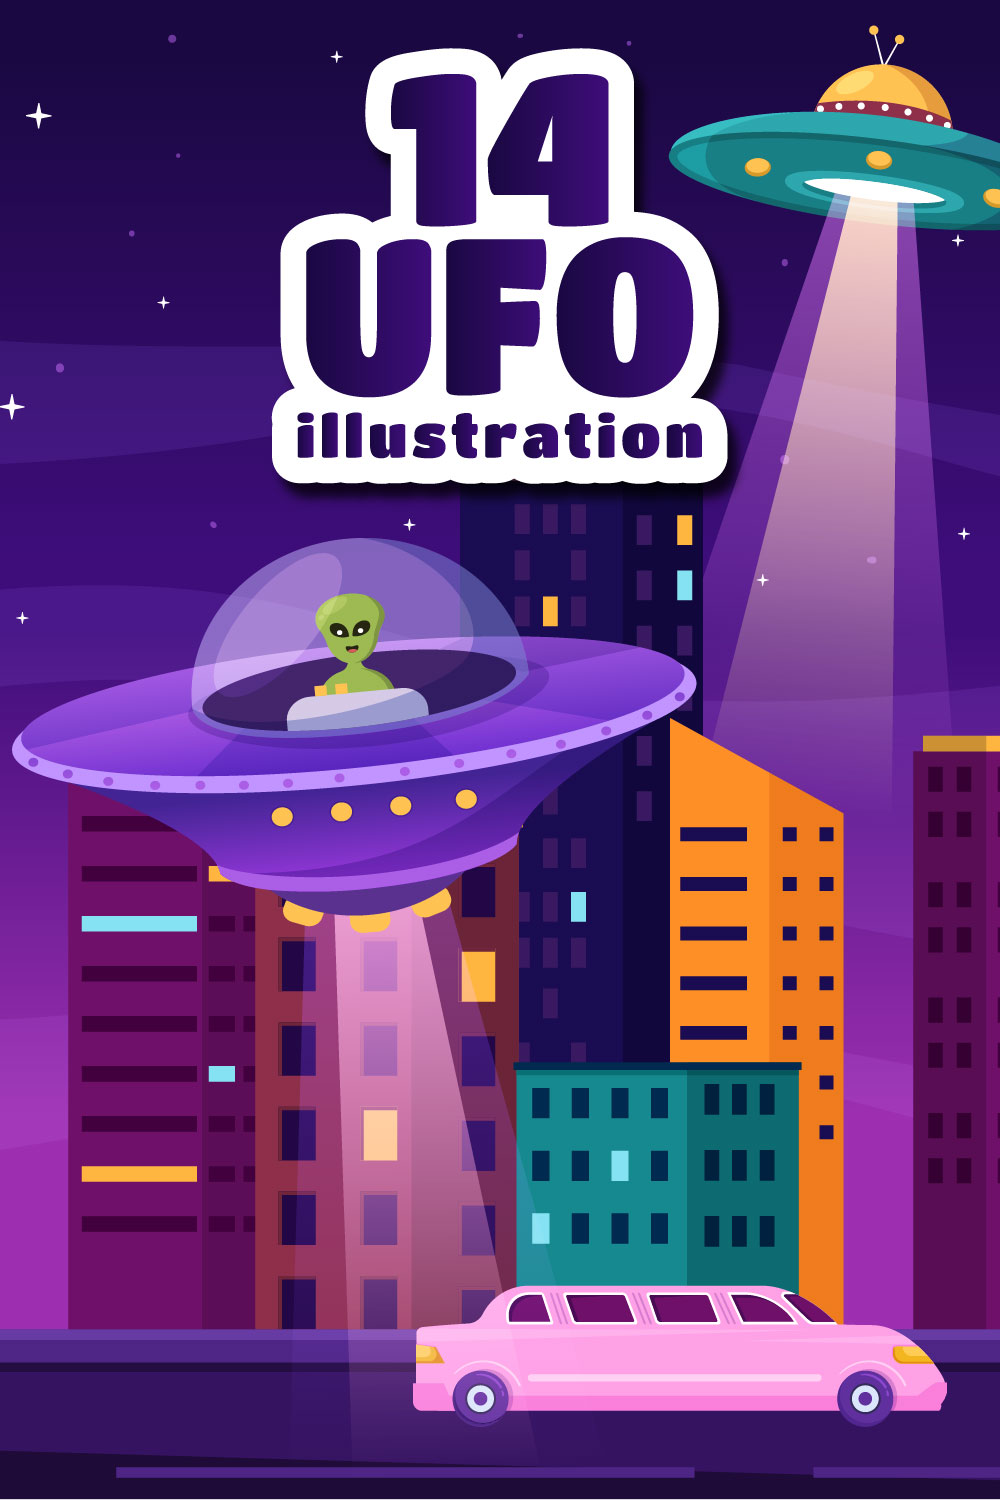 UFO Flying Spaceship Illustration pinterest image.